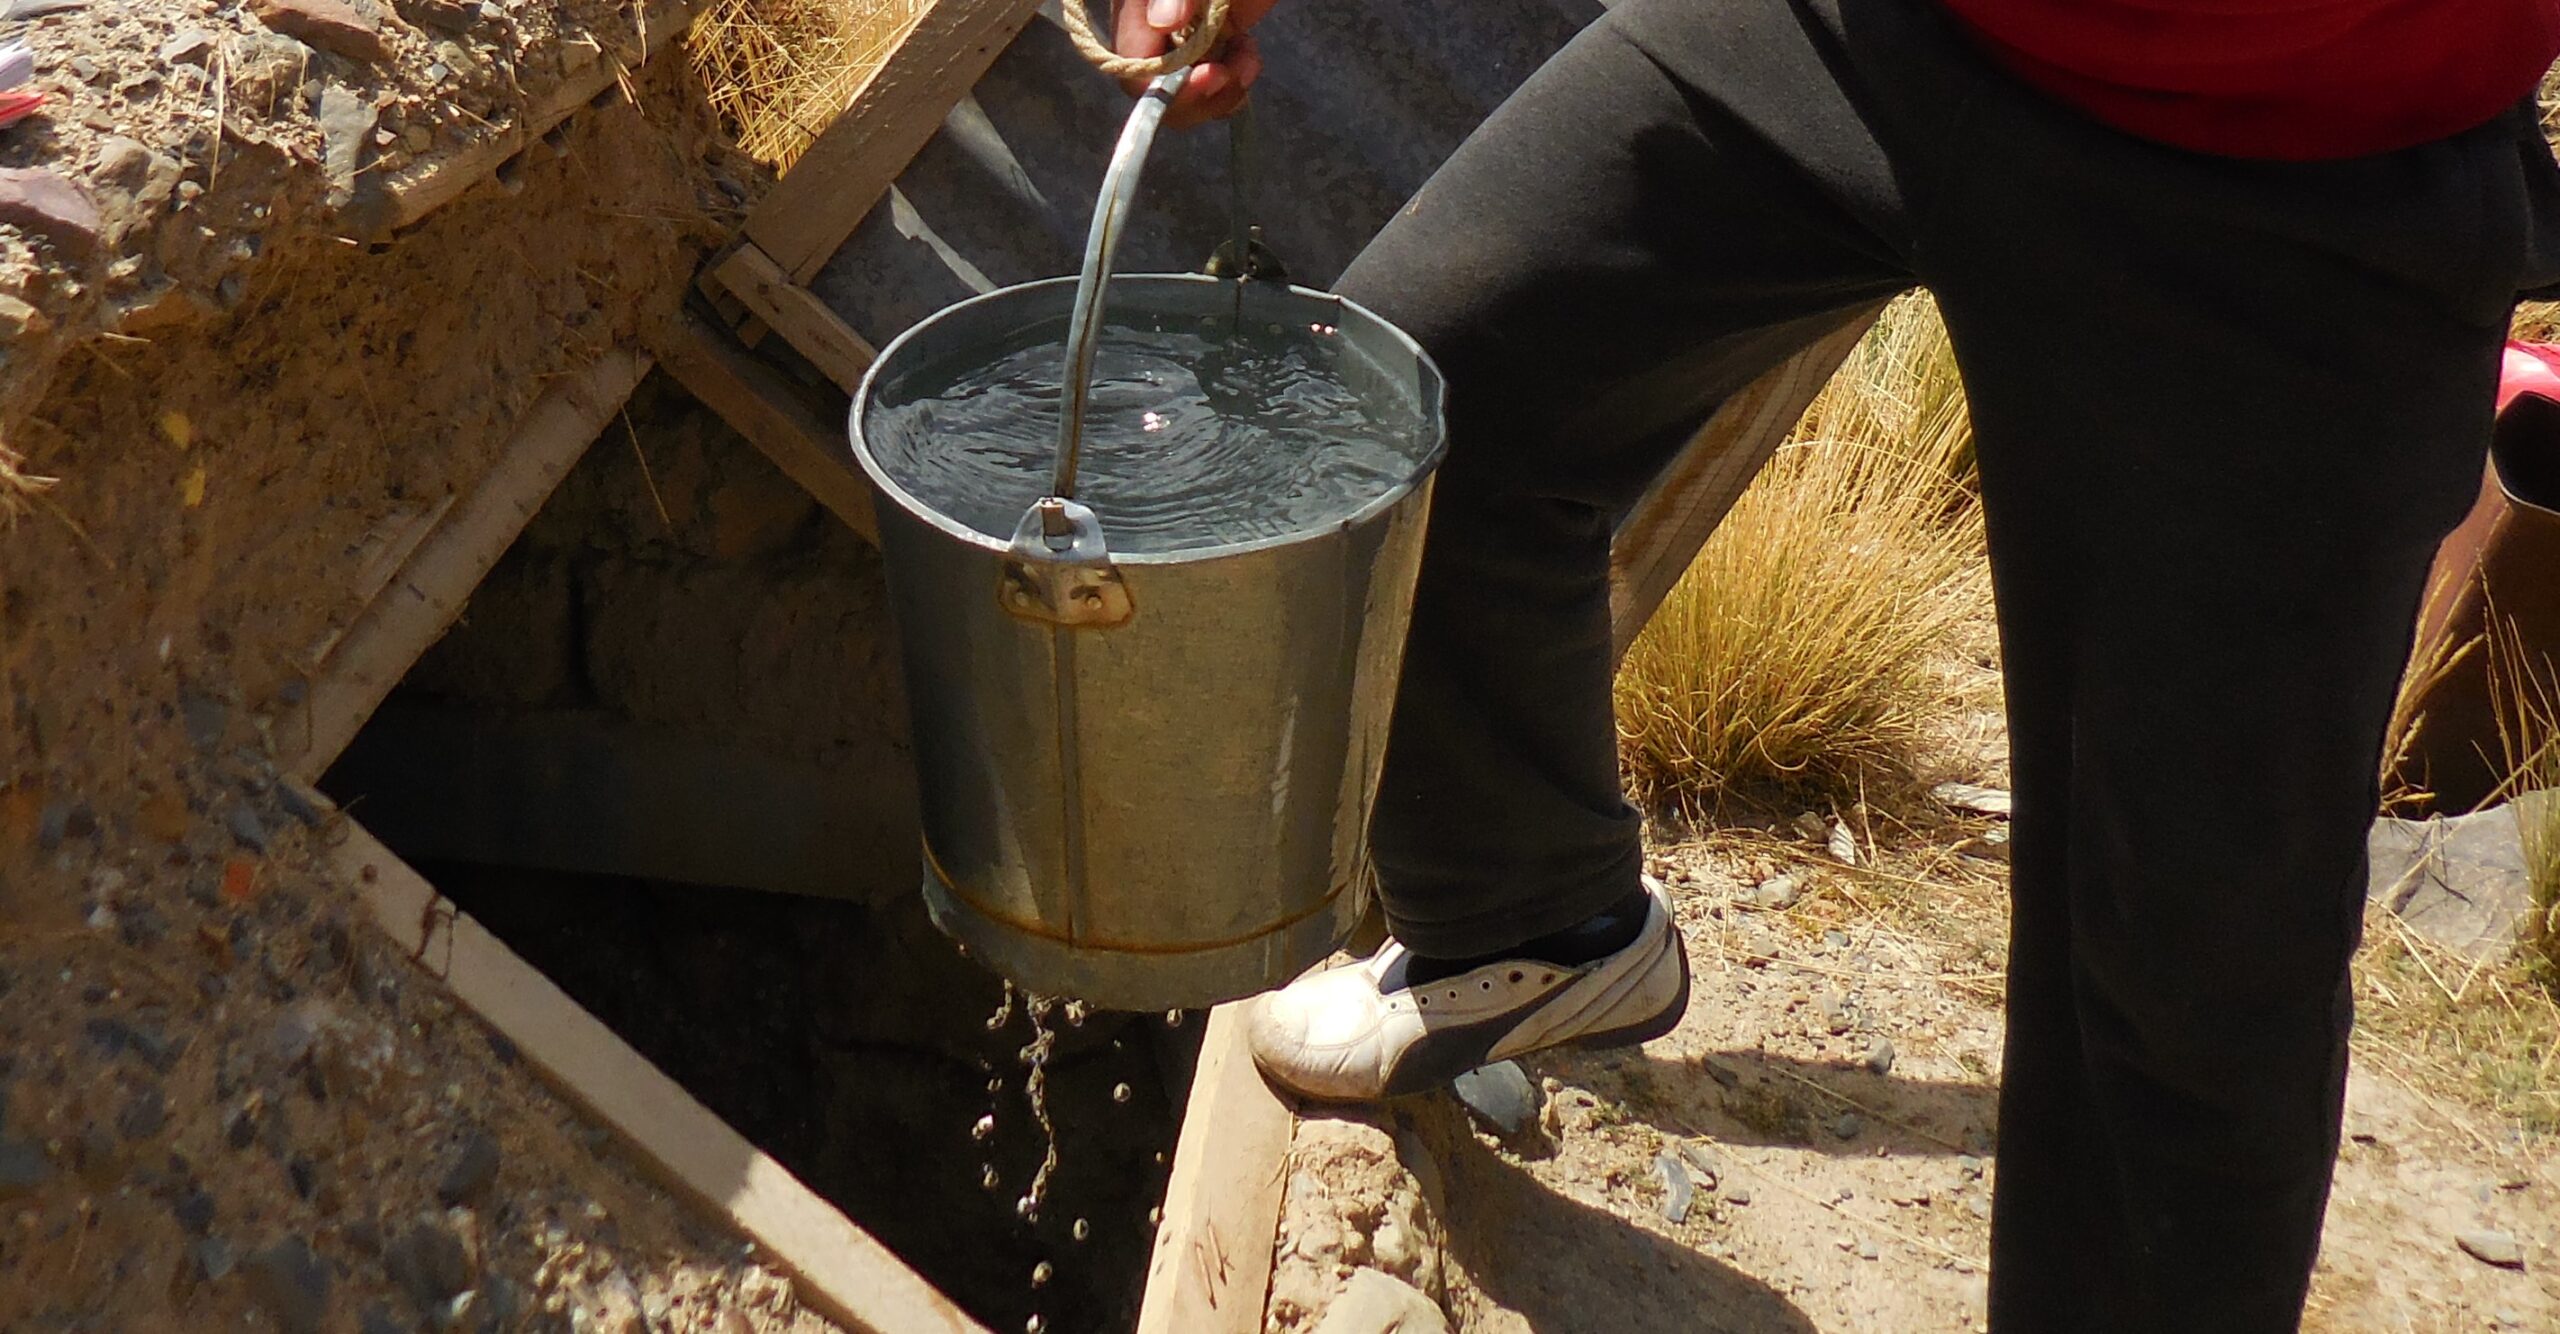 El Alto crece y cubre su demanda de agua con pozos